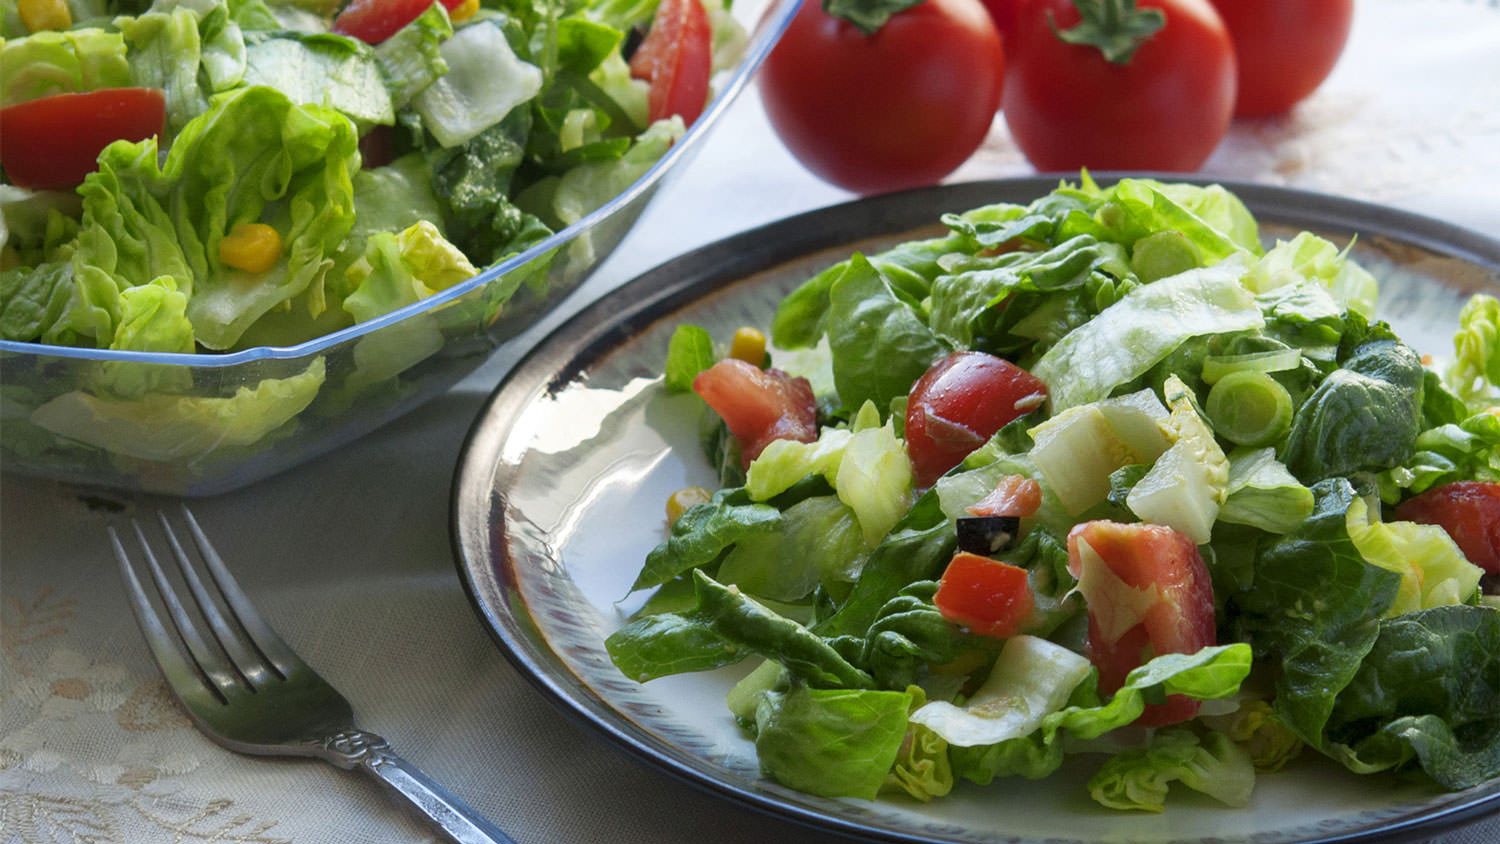 Low Fat Salad Dressing Recipes
 Low fat salad dressing